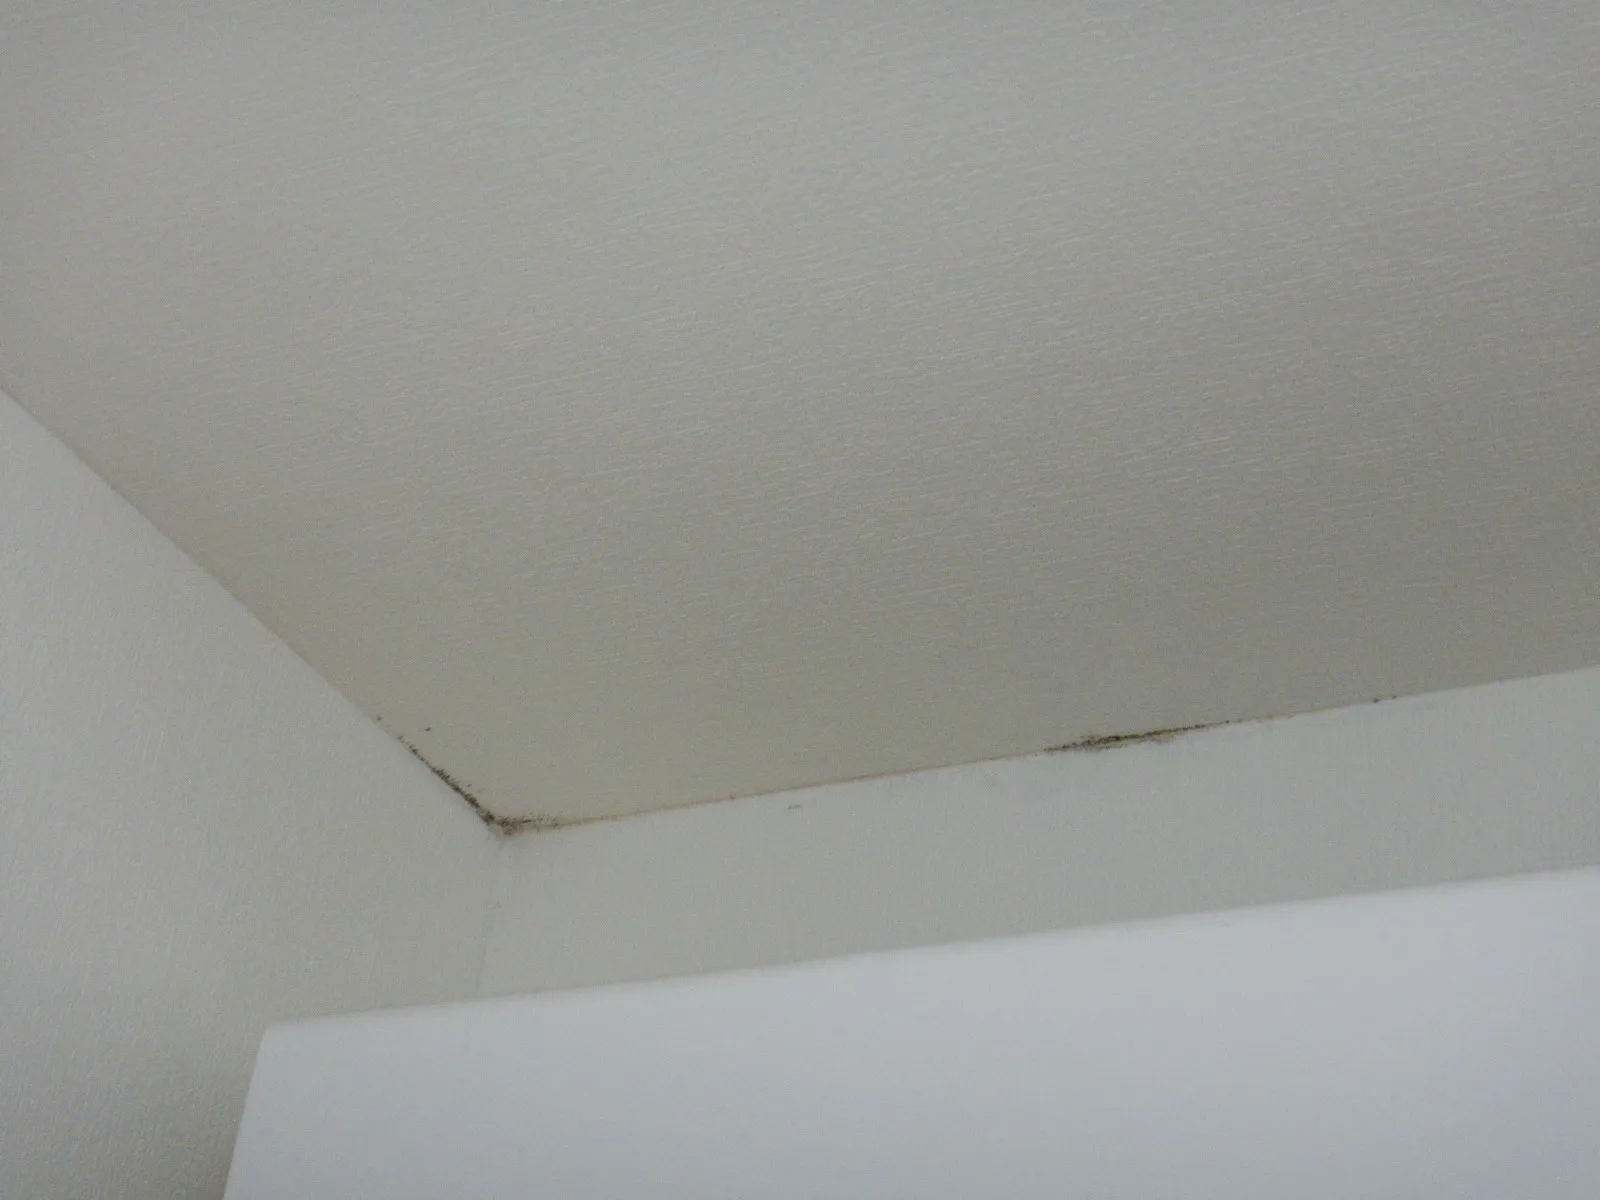 【埼玉賃貸】カビ臭い部屋天井コンクリート下地直張り壁紙の対策